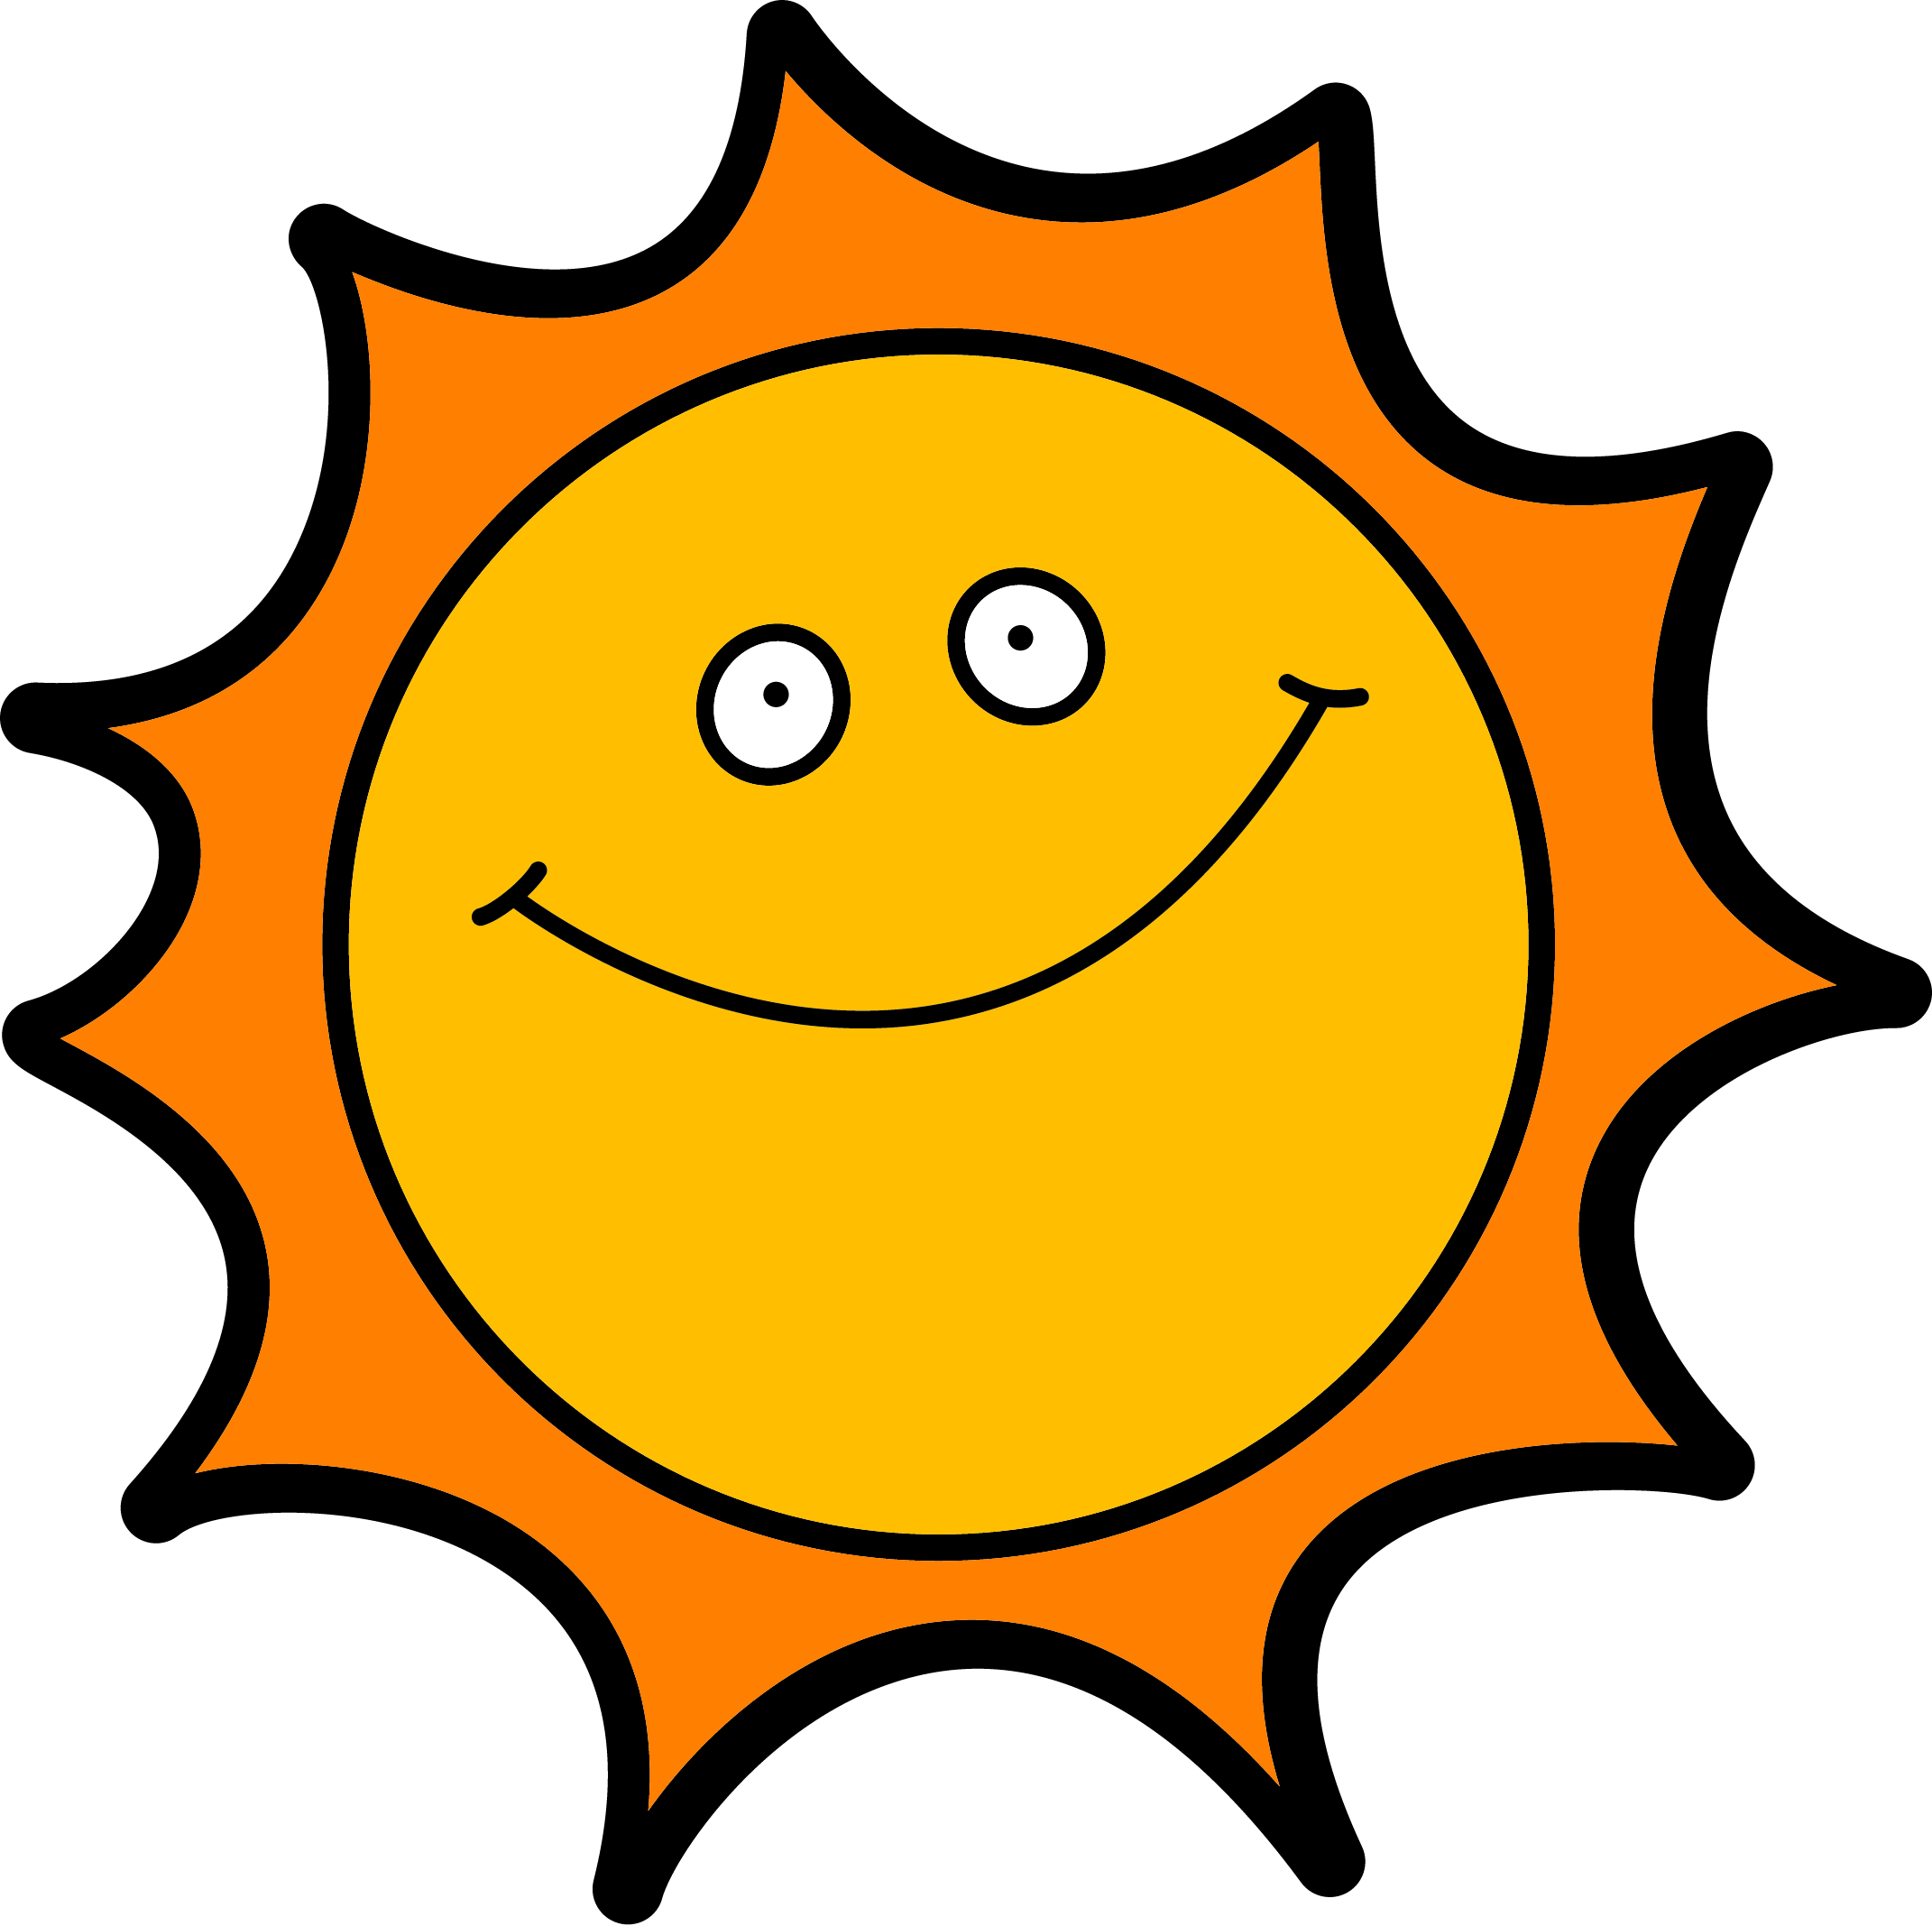 kid with a sun logo clipart